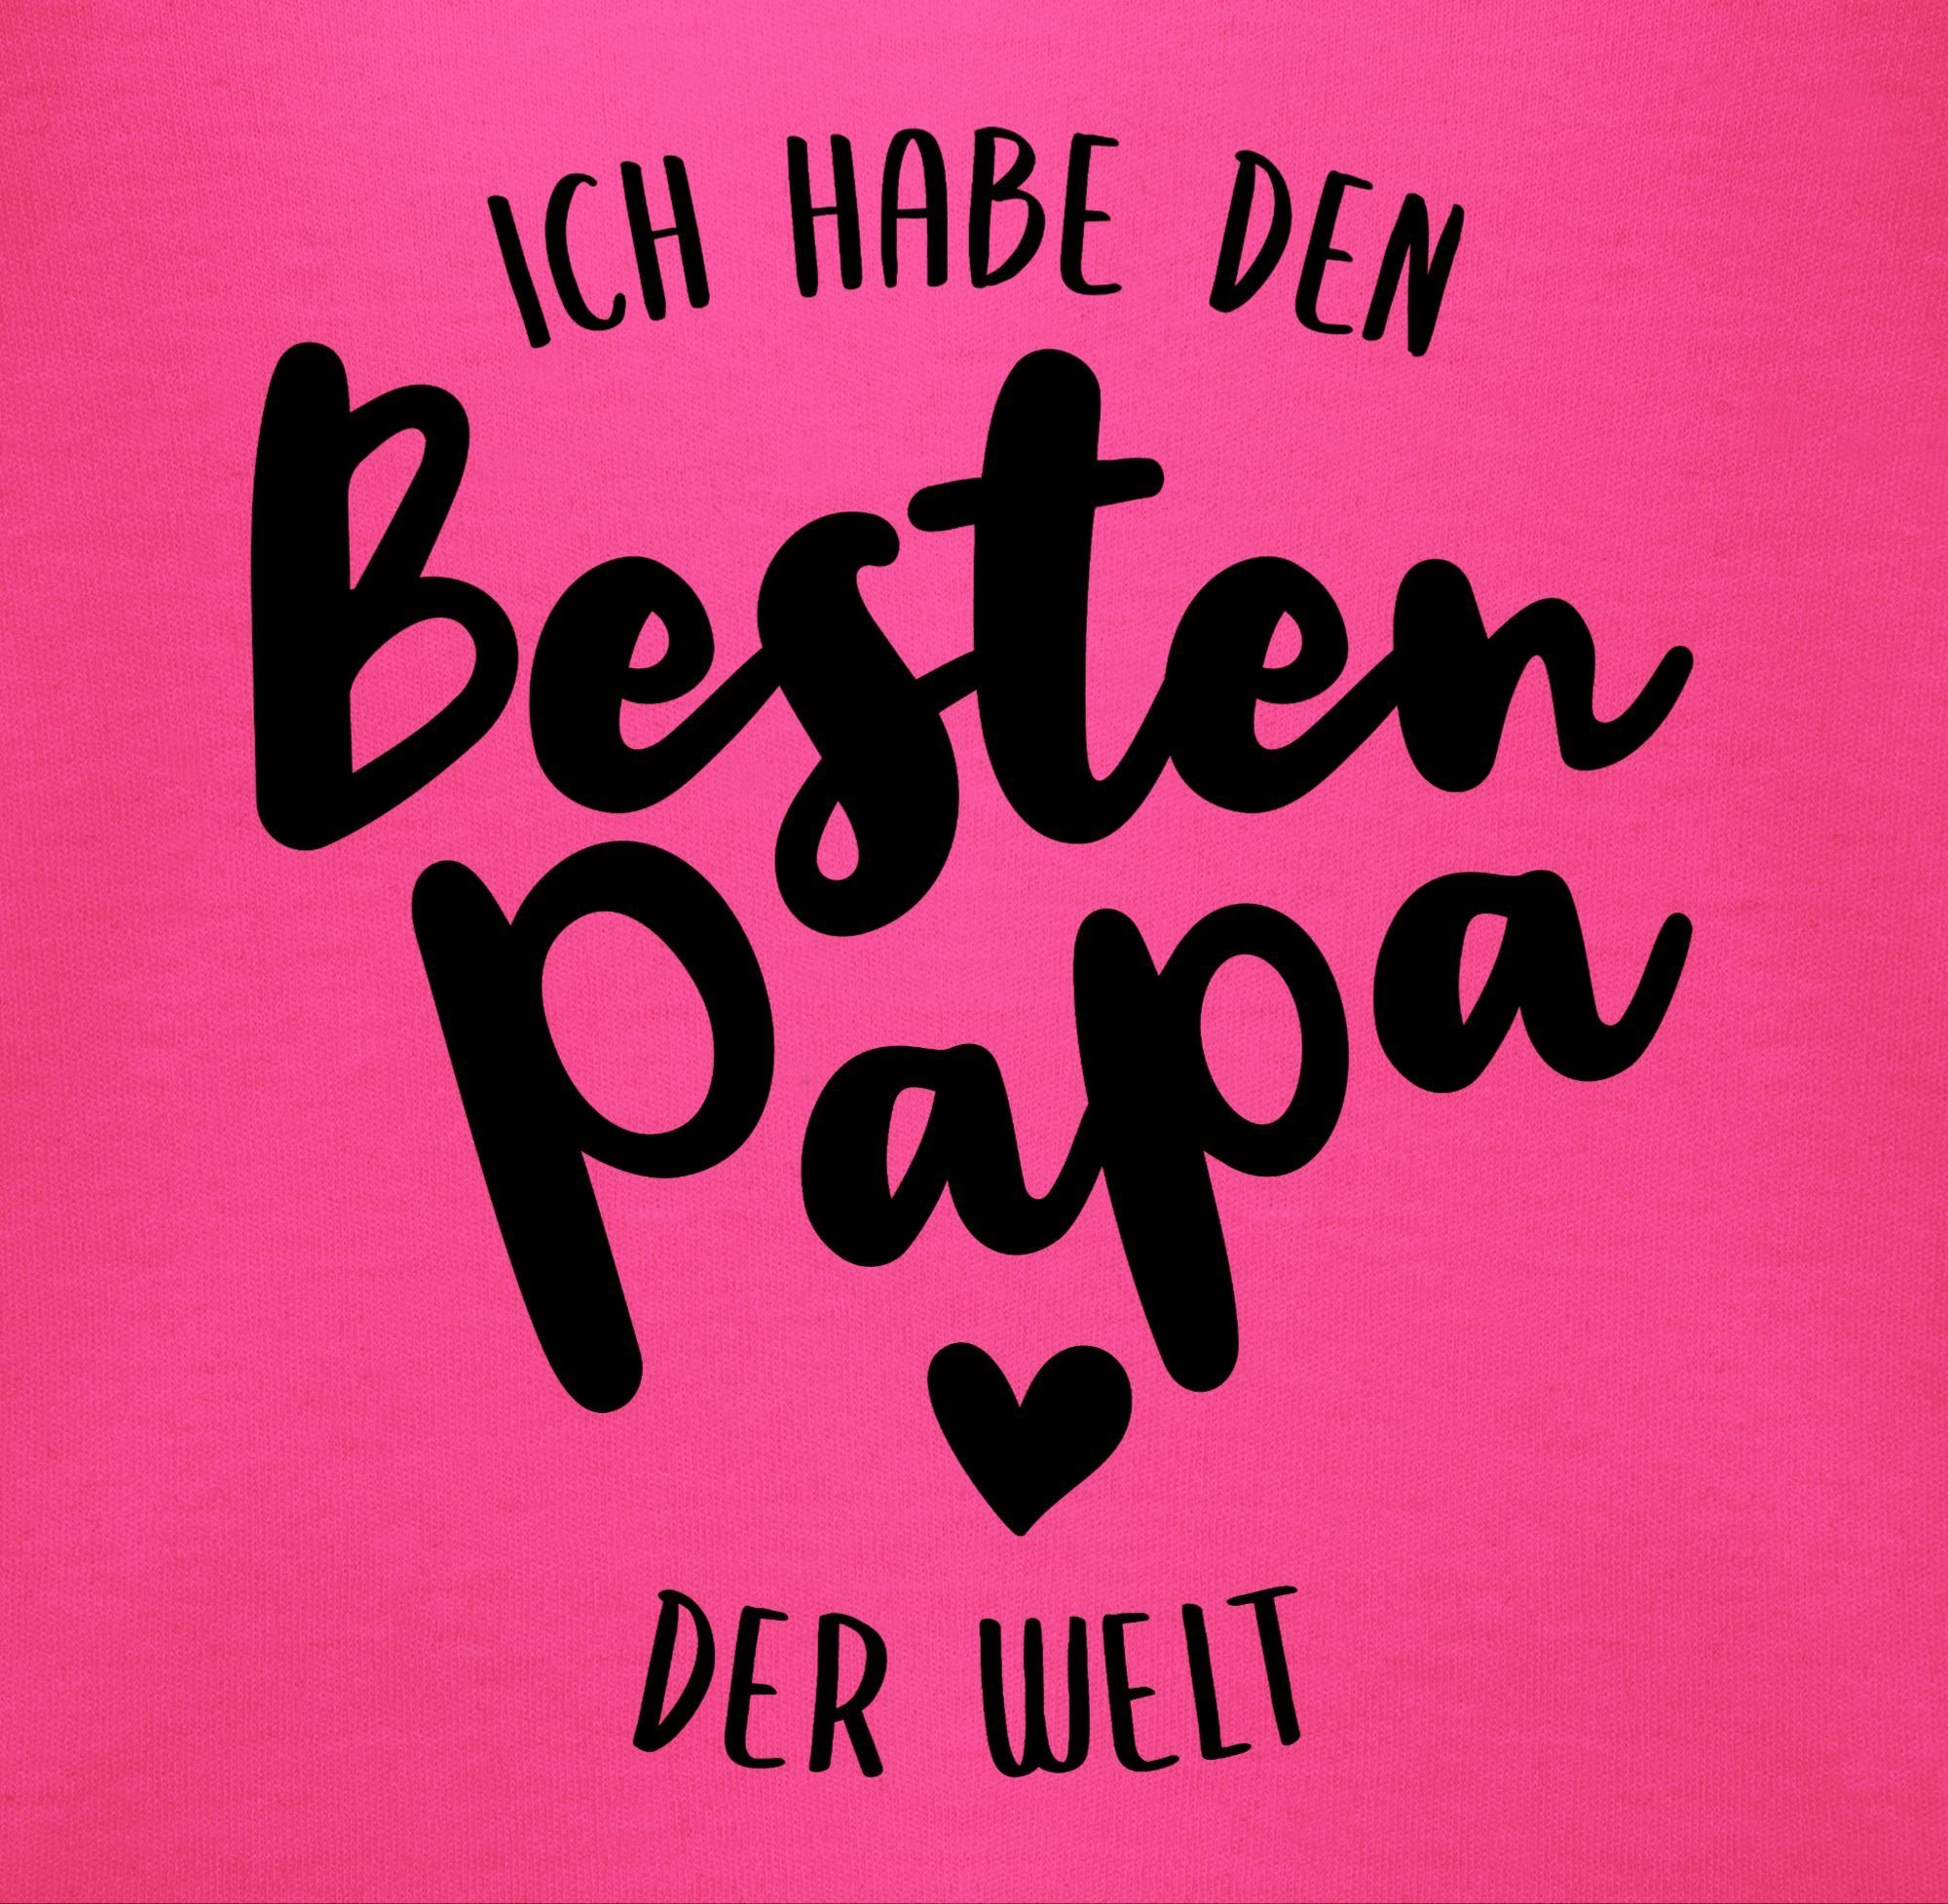 Baby Shirtbody der Vatertag Papa Fuchsia Geschenk Besten I Shirtracer 2 Welt